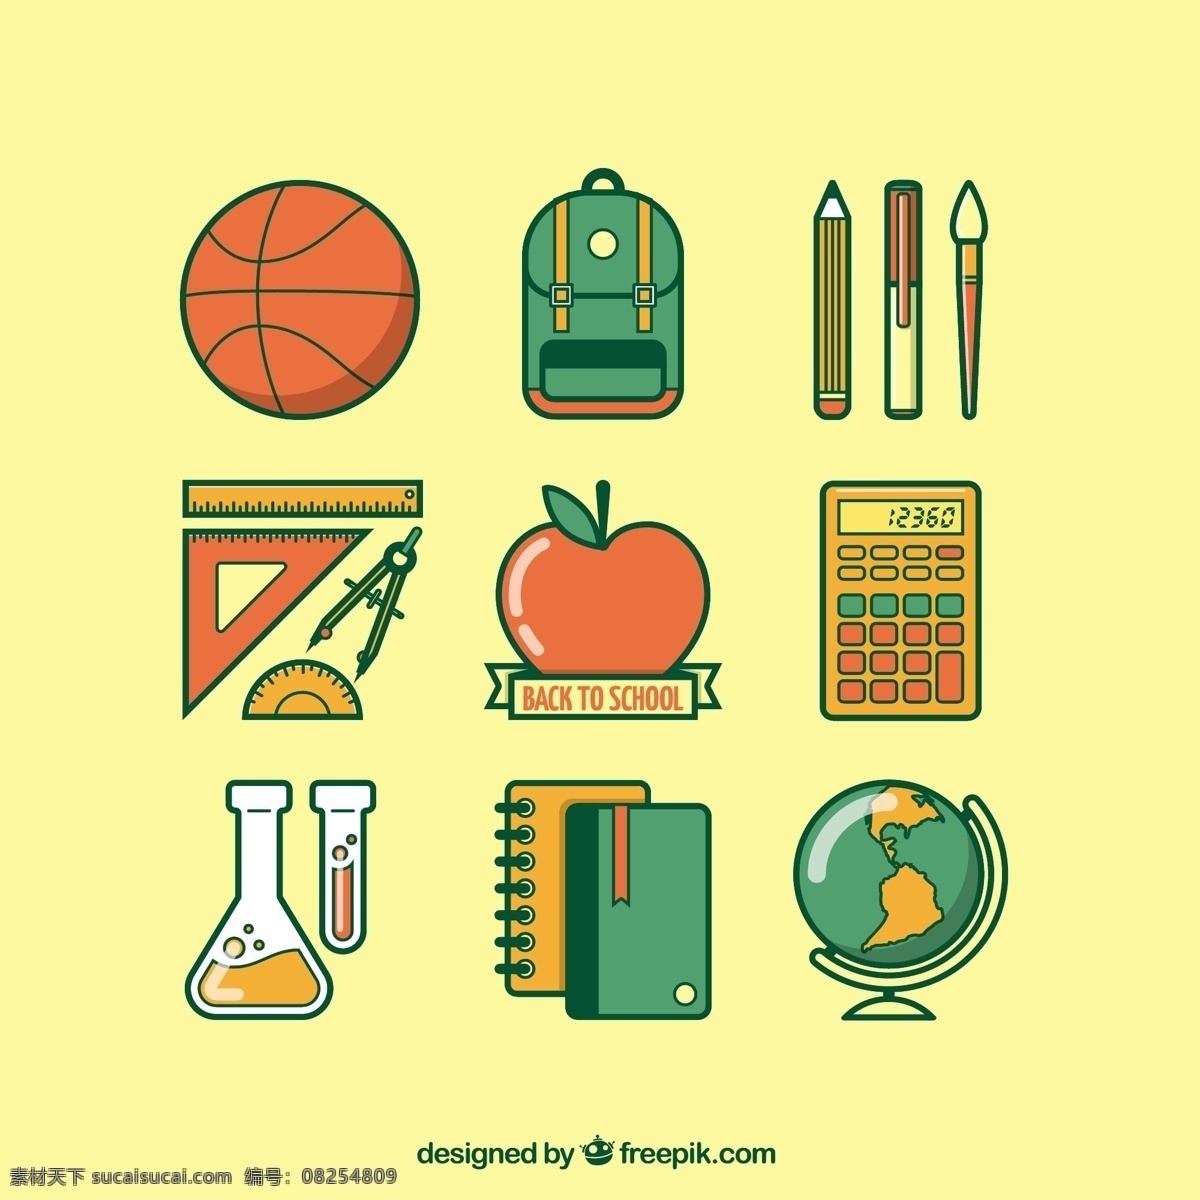 各种 回 学校 图标 教育 篮球 苹果 科学 铅笔 笔记本电脑 回到学校 计算器 实验室 后面 教育图标 铅笔图标 统治者 黄色